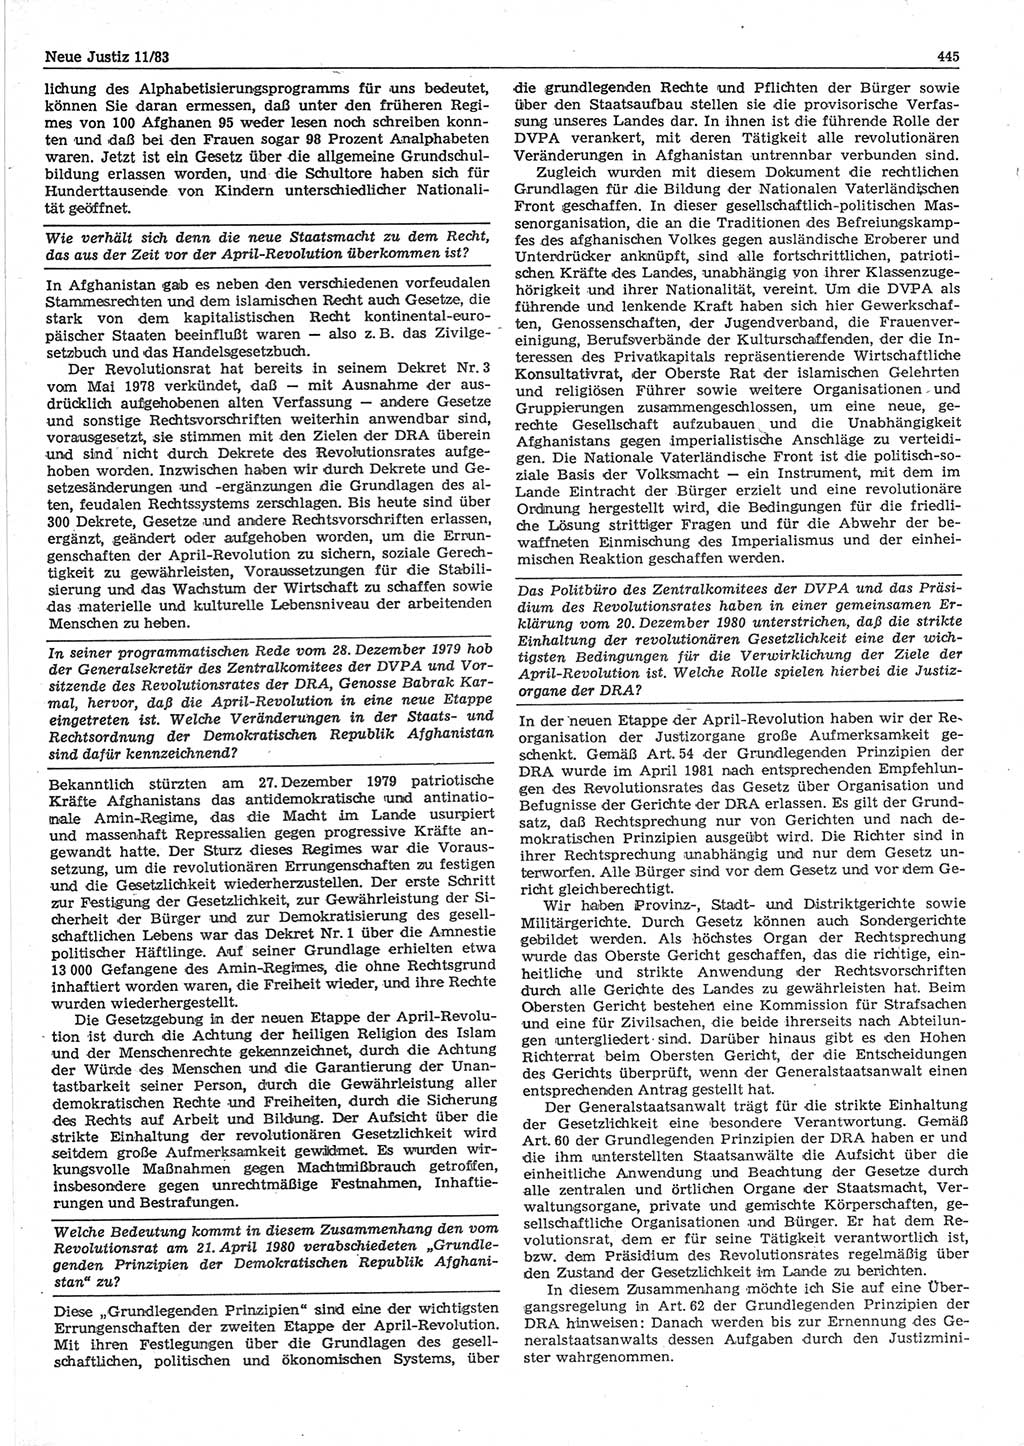 Neue Justiz (NJ), Zeitschrift für sozialistisches Recht und Gesetzlichkeit [Deutsche Demokratische Republik (DDR)], 37. Jahrgang 1983, Seite 445 (NJ DDR 1983, S. 445)